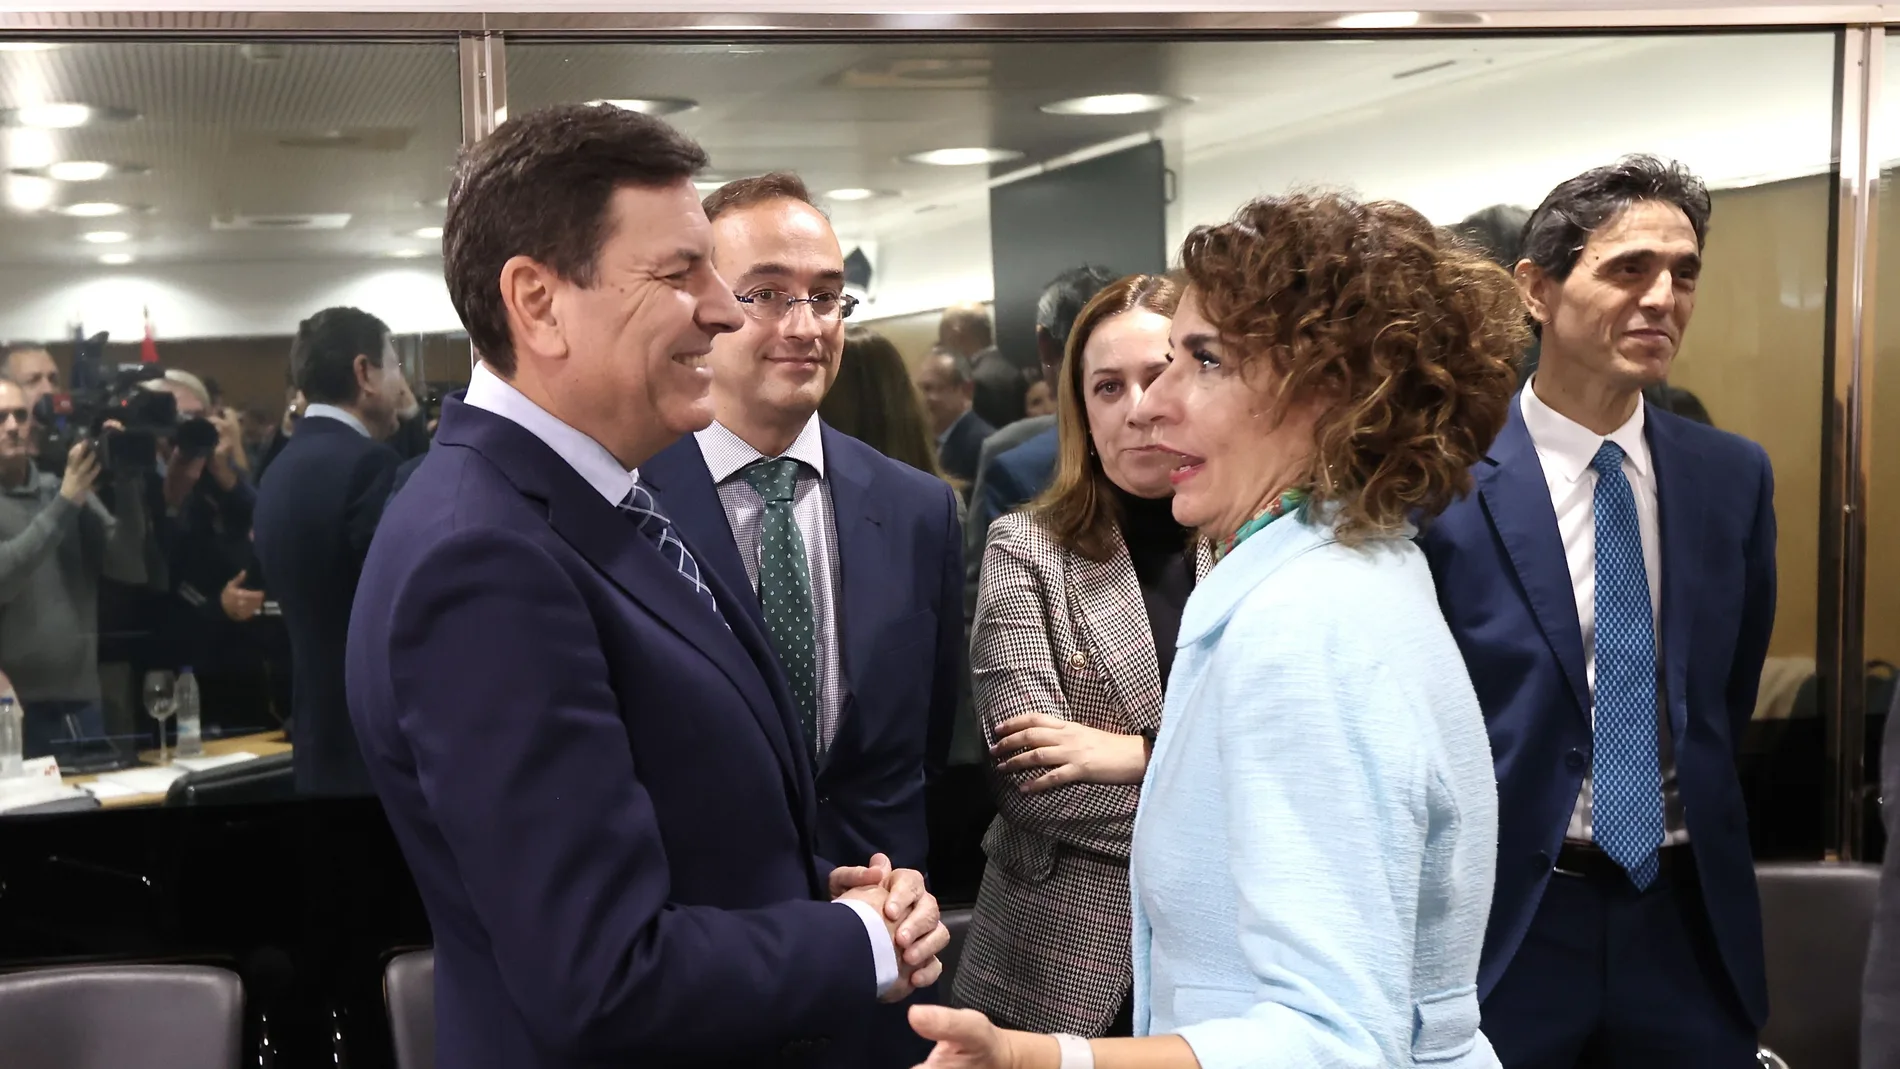 El consejero de Economía y Hacienda, Carlos Fernández Carriedo,saluda a la ministra de Hacienda, María Jesús Montero, al comienzo del pleno del Consejo de Política Fiscal y Financiera.